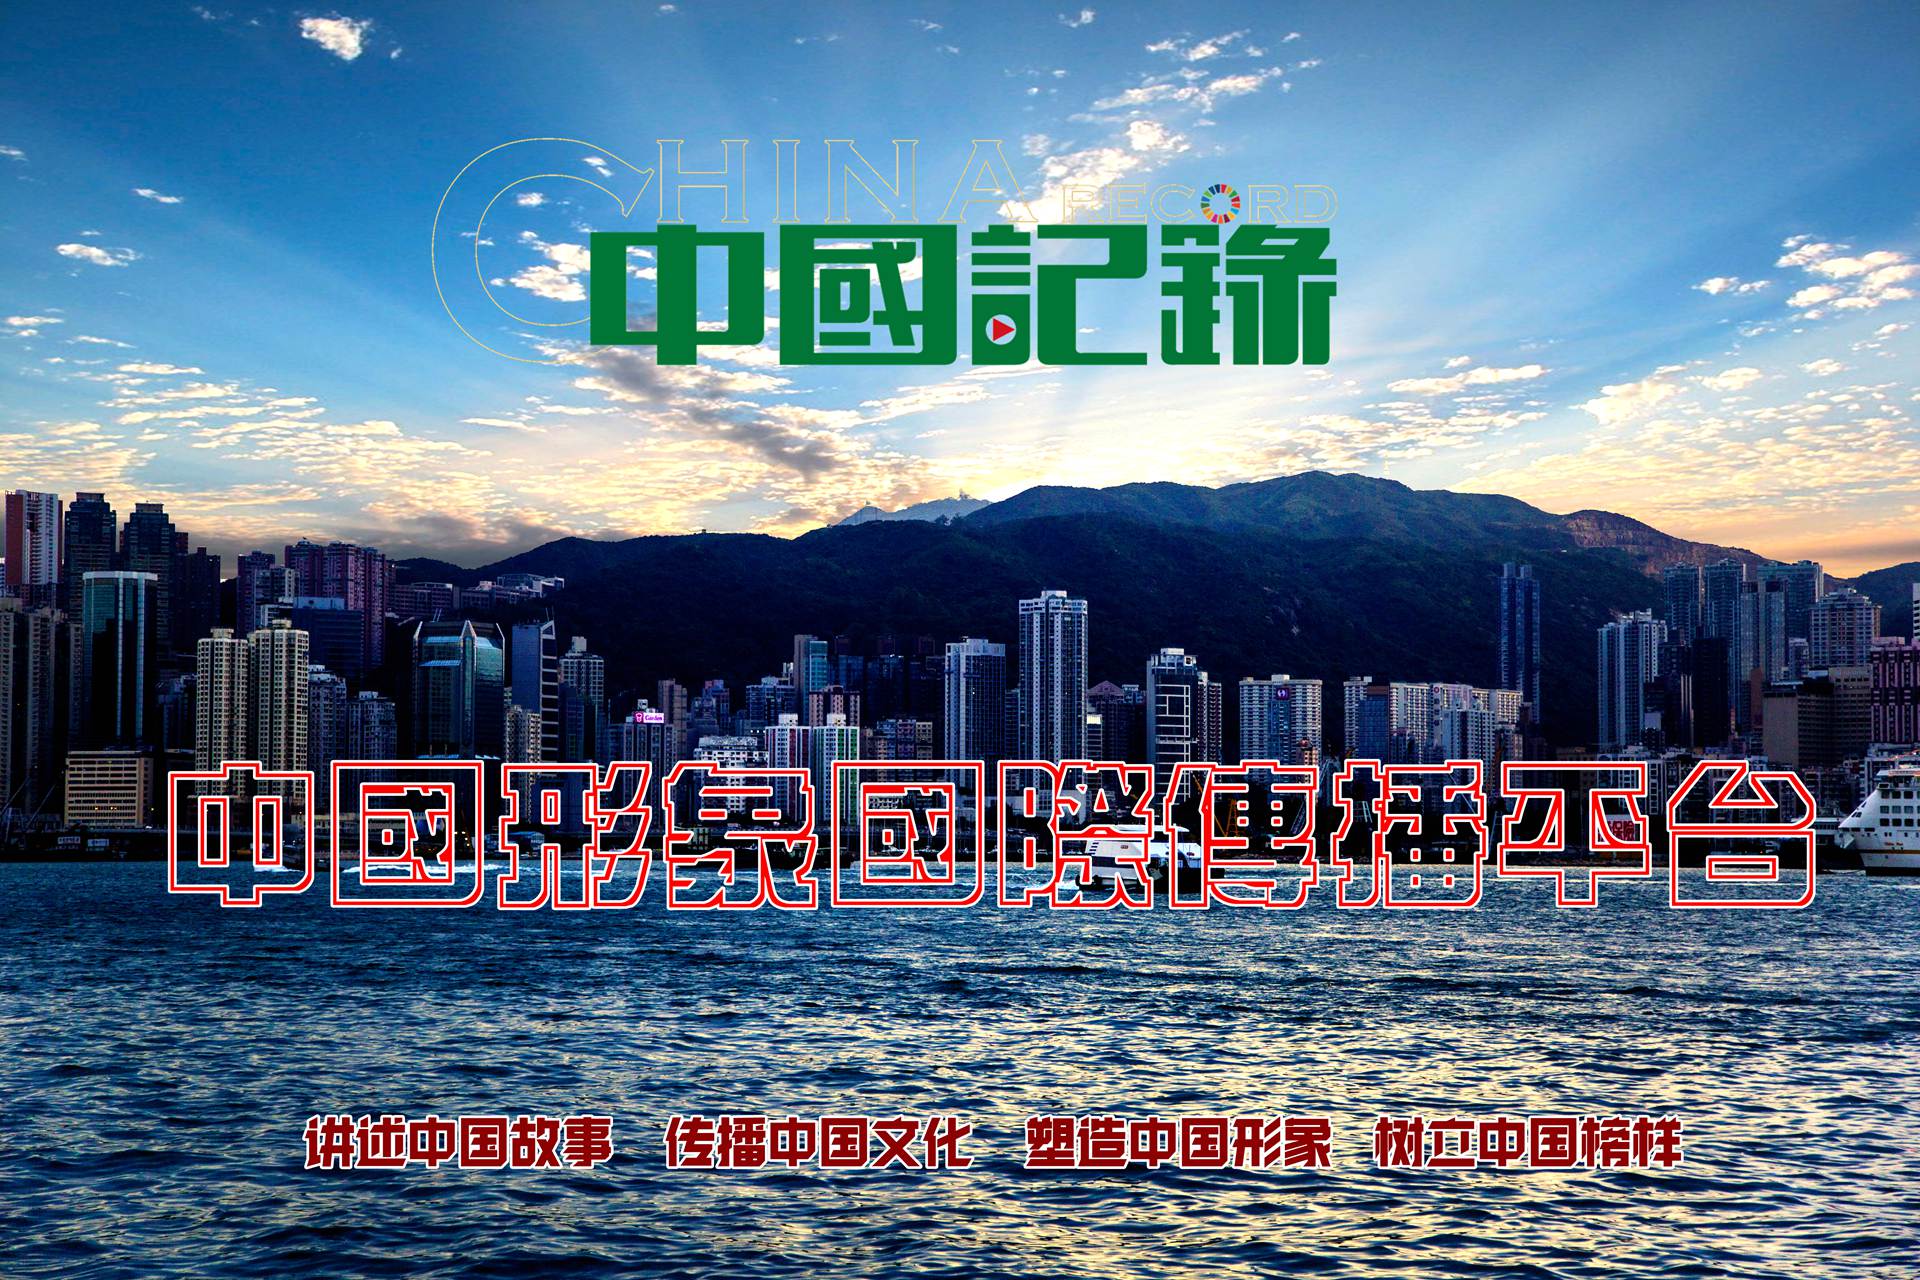 中國記錄通訊社是總部位於香港的國際性通訊社